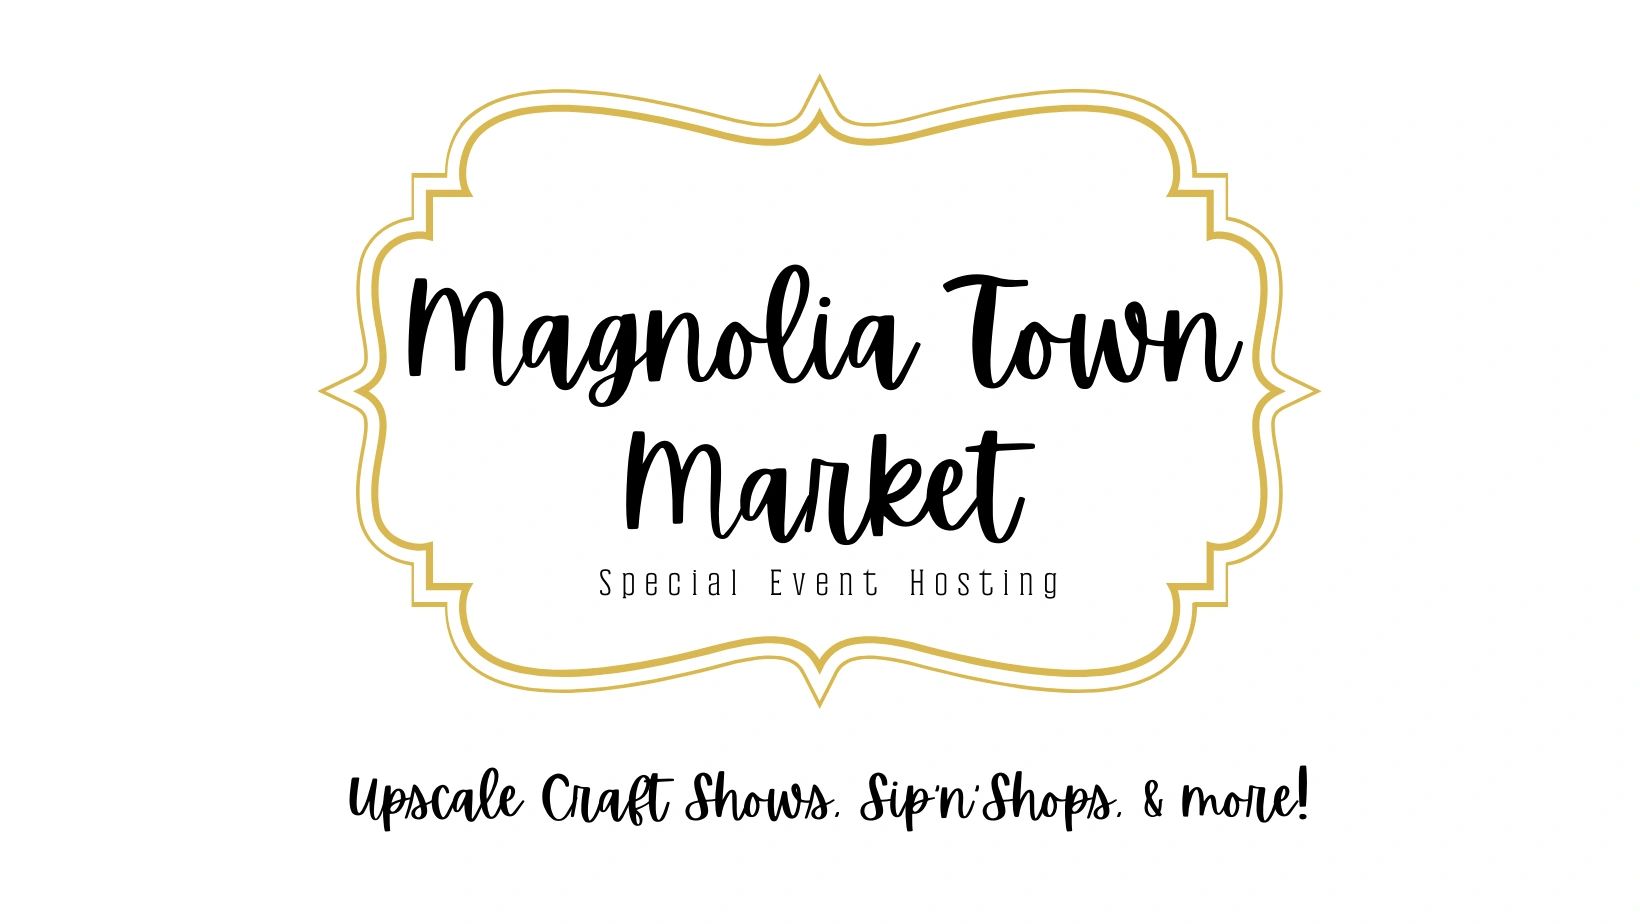 Magnolia Town Market